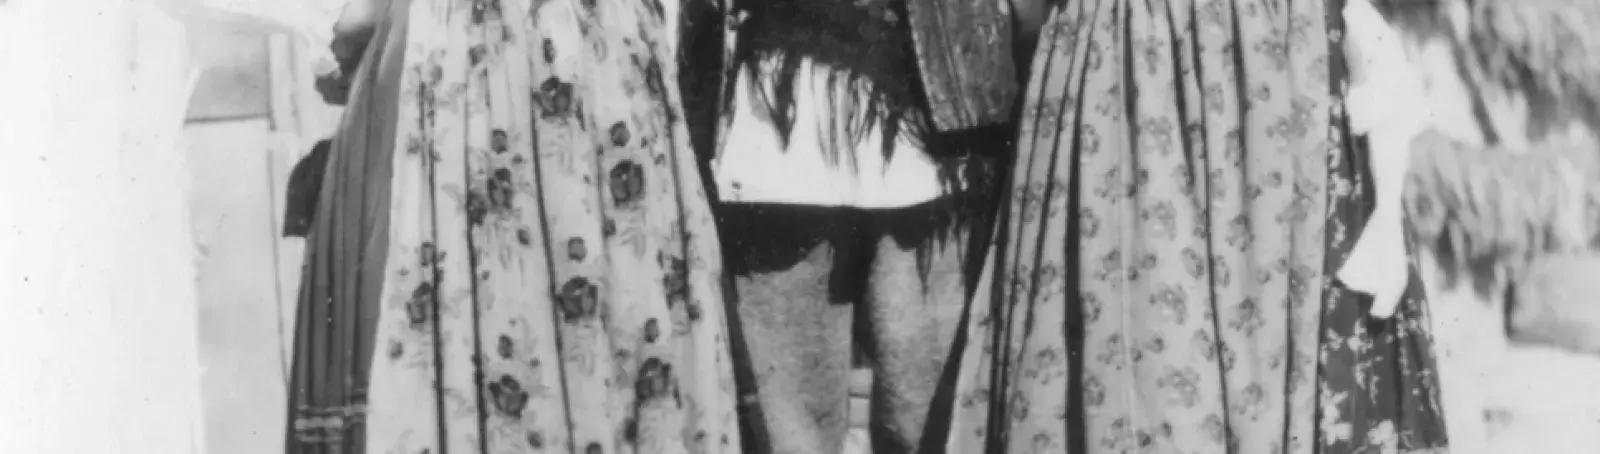 Két nő és egy férfi mezőségi viseletben. Mezőkeszü, 1960-as évek